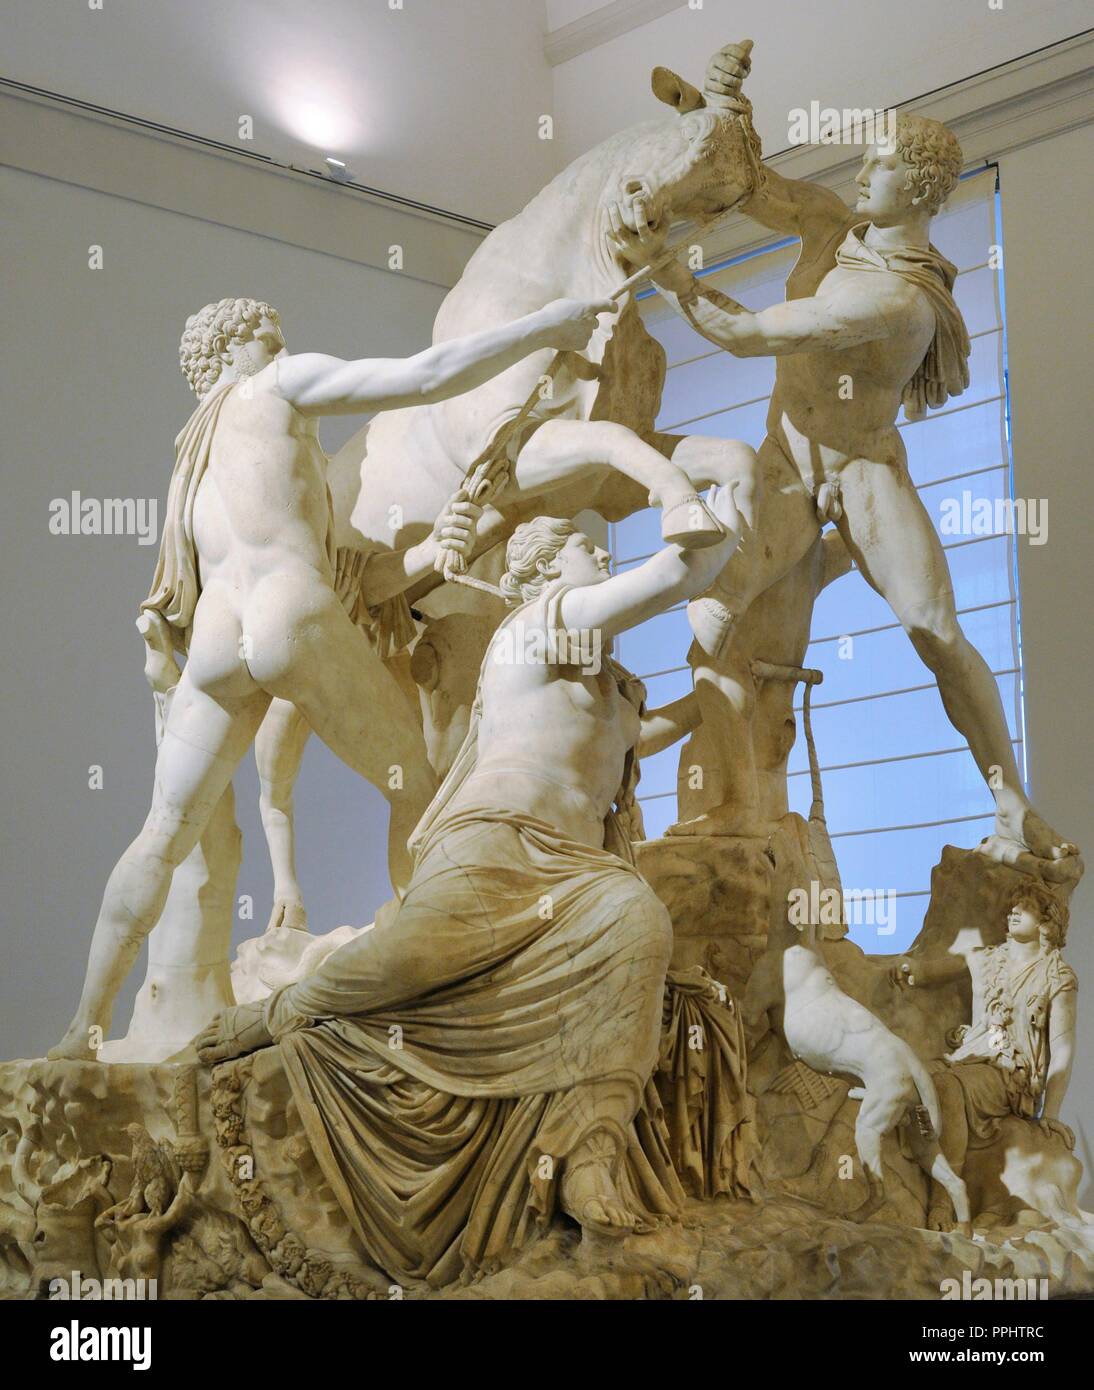 Les Farnèse et Bull. Copie romaine (3e siècle) d'une sculpture  hellénistique. Mythe de la Dirce. Elle a été attachée à un taureau sauvage  par les fils d'Antiope, Amphion et Zethus. De thermes